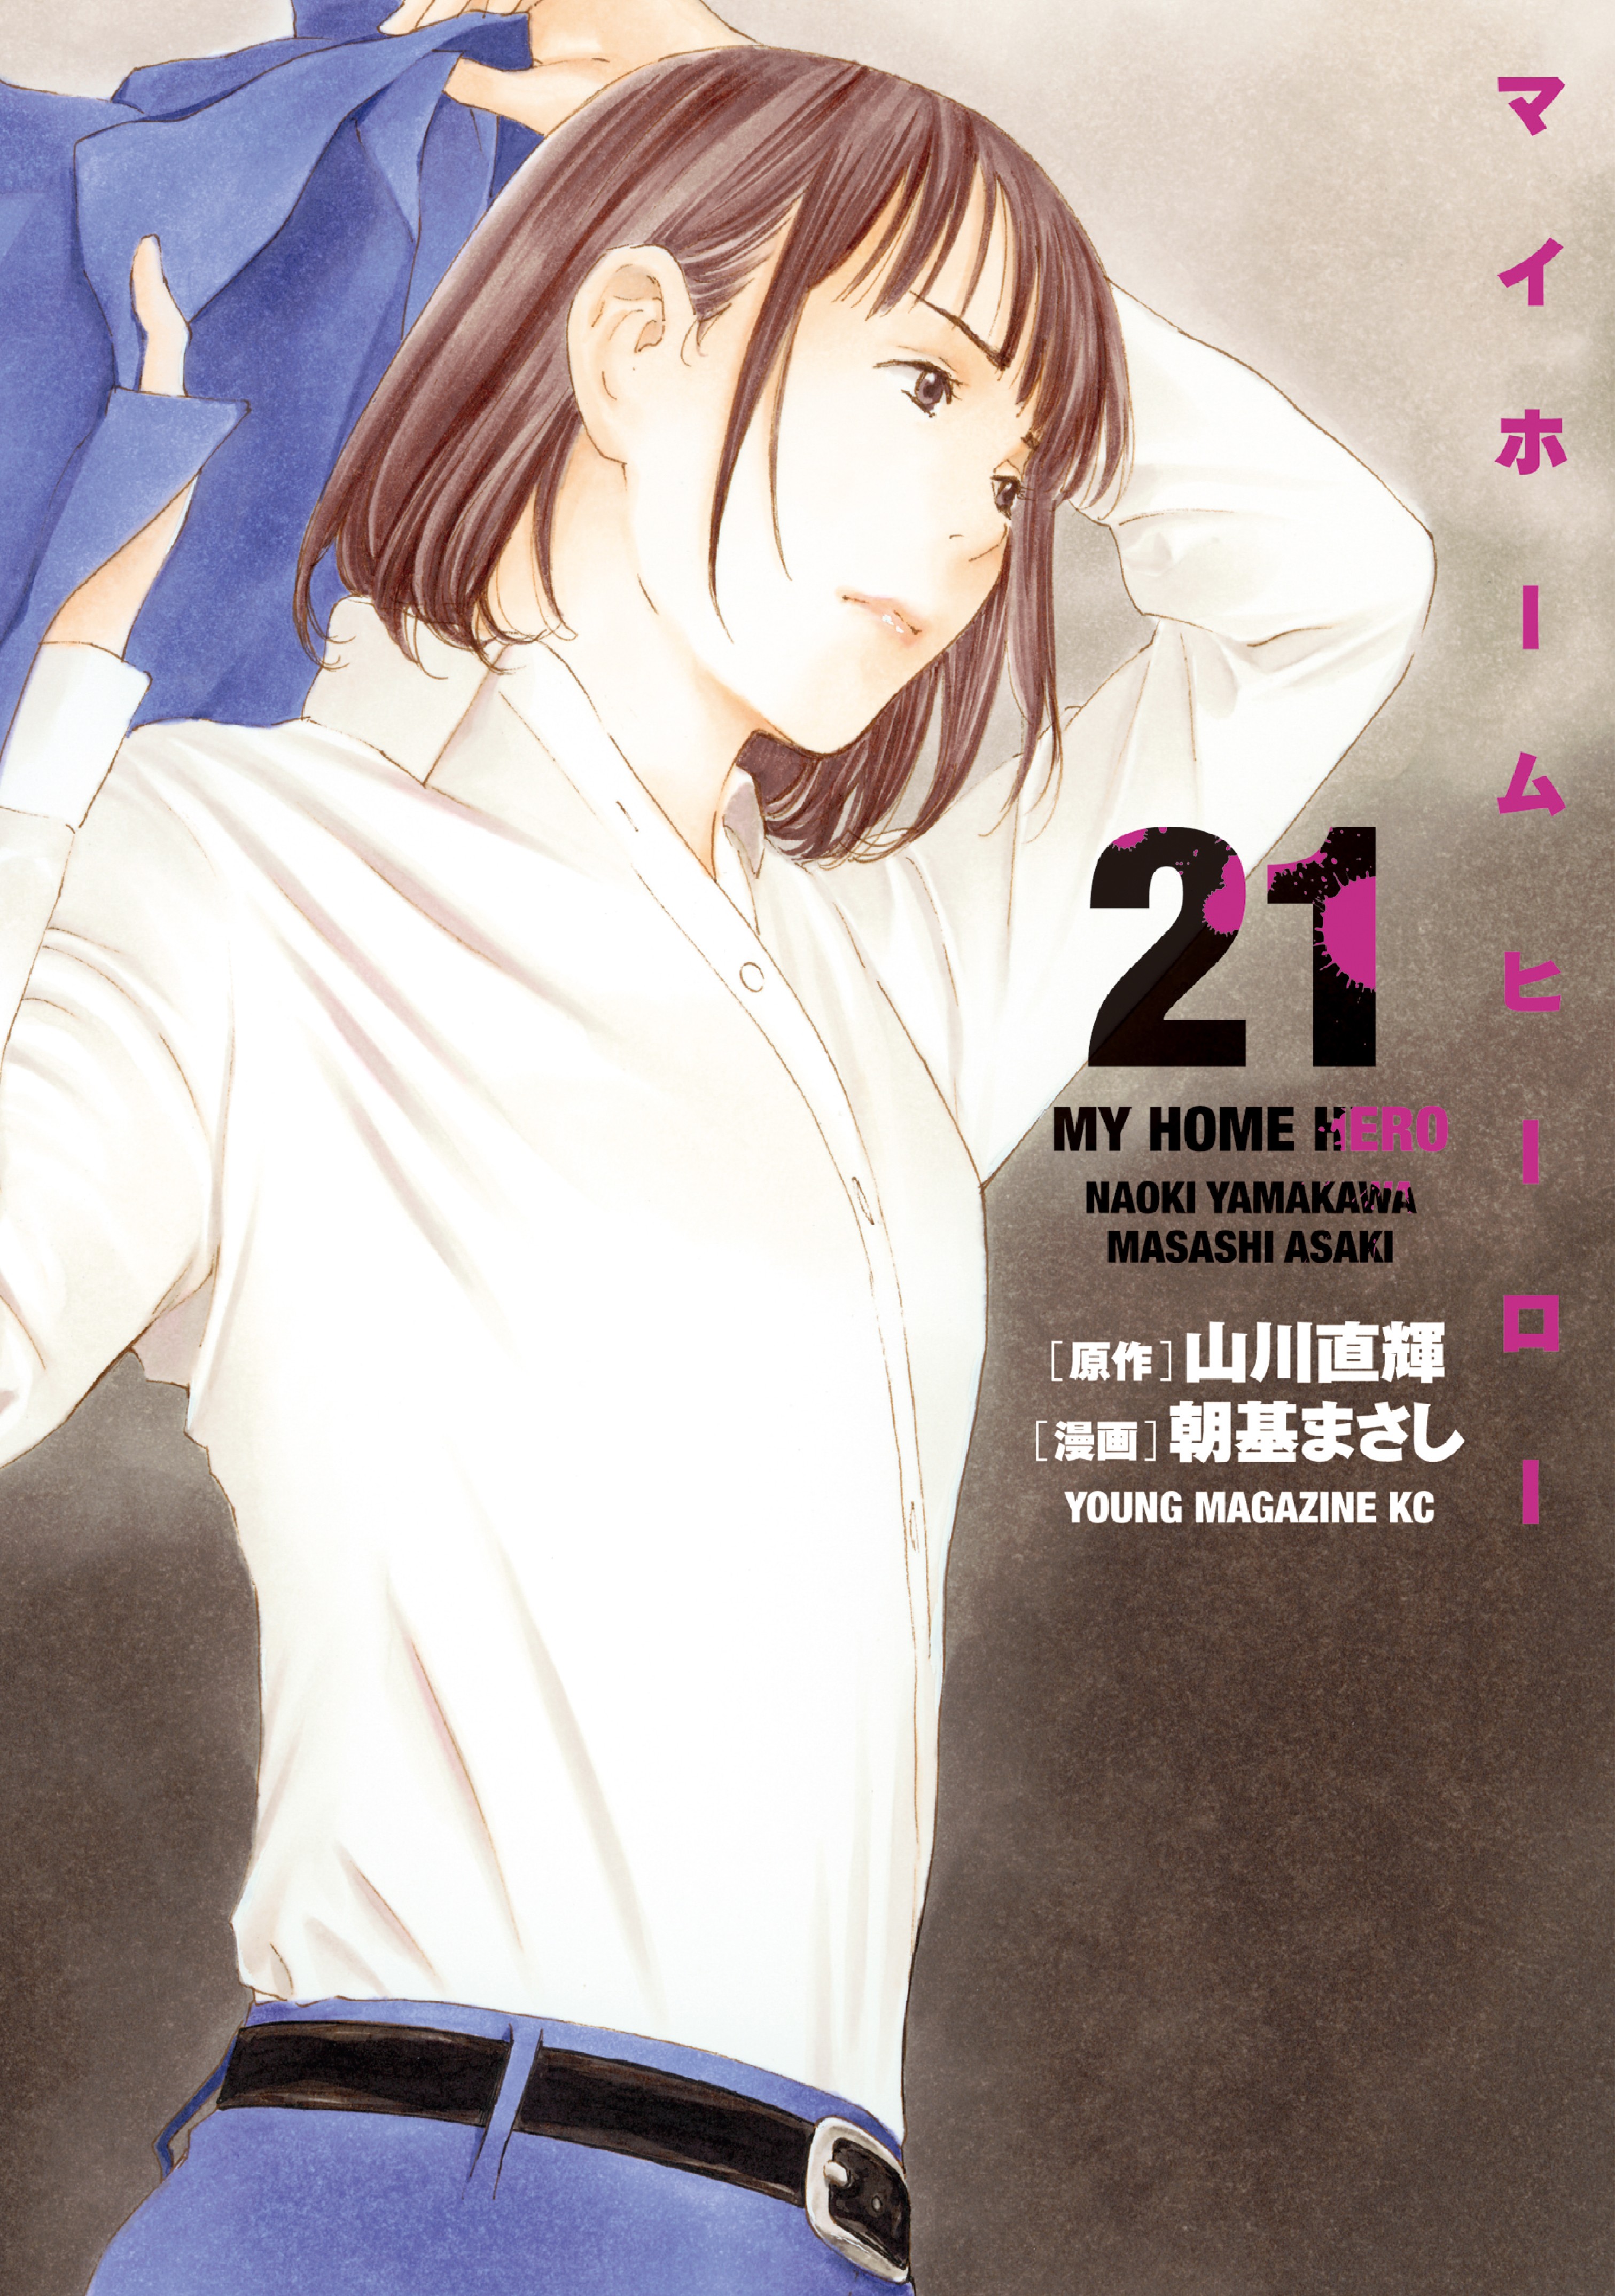 My Home Hero 3 Mangá eBook de Naoki Yamakawa - EPUB Livro